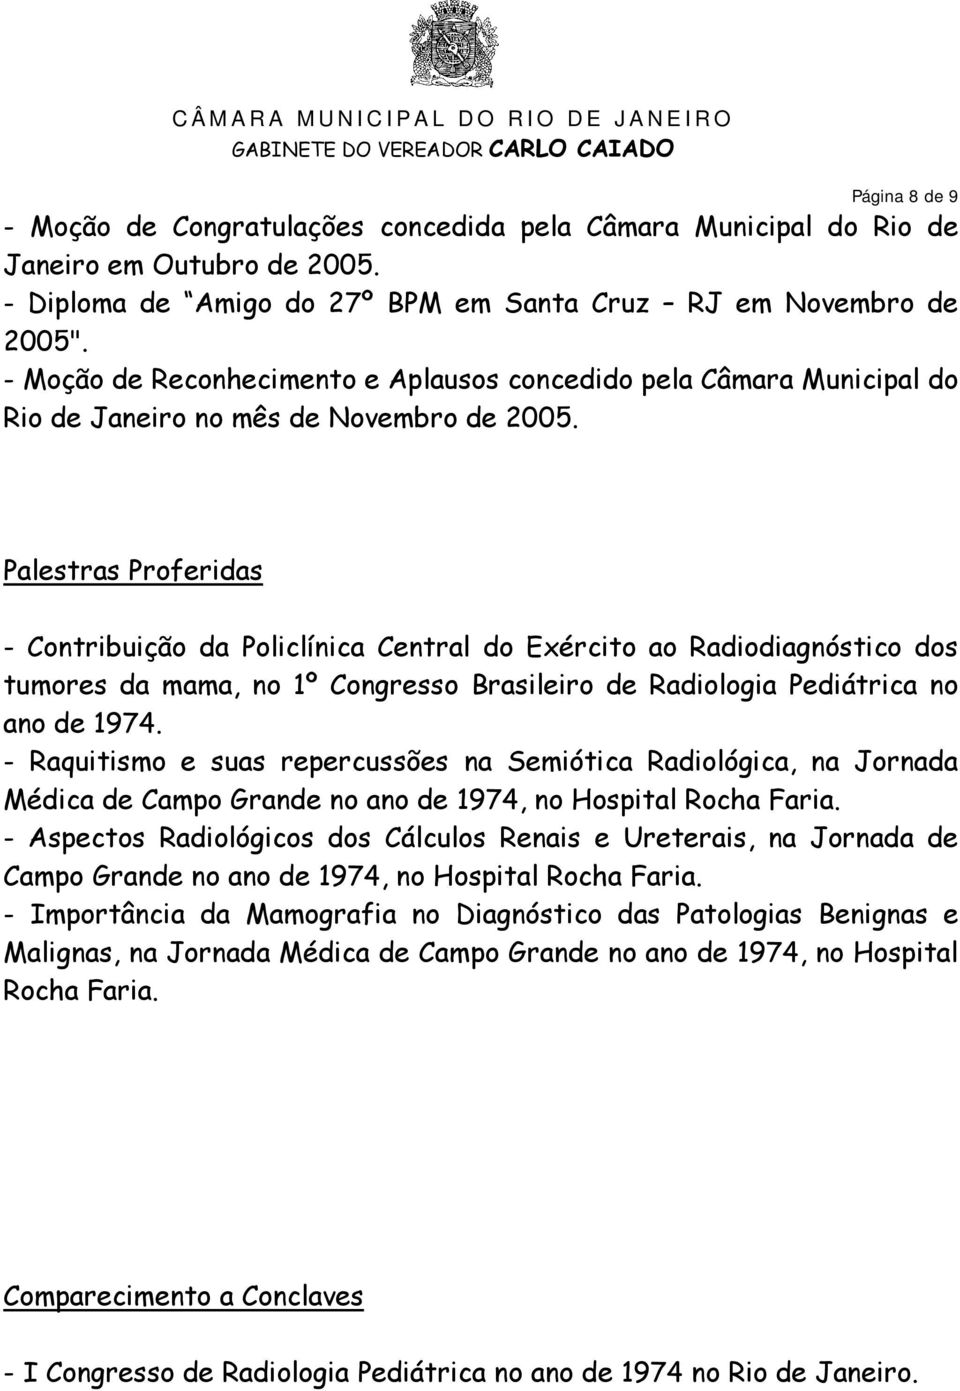 Palestras Proferidas - Contribuição da Policlínica Central do Exército ao Radiodiagnóstico dos tumores da mama, no 1º Congresso Brasileiro de Radiologia Pediátrica no ano de 1974.